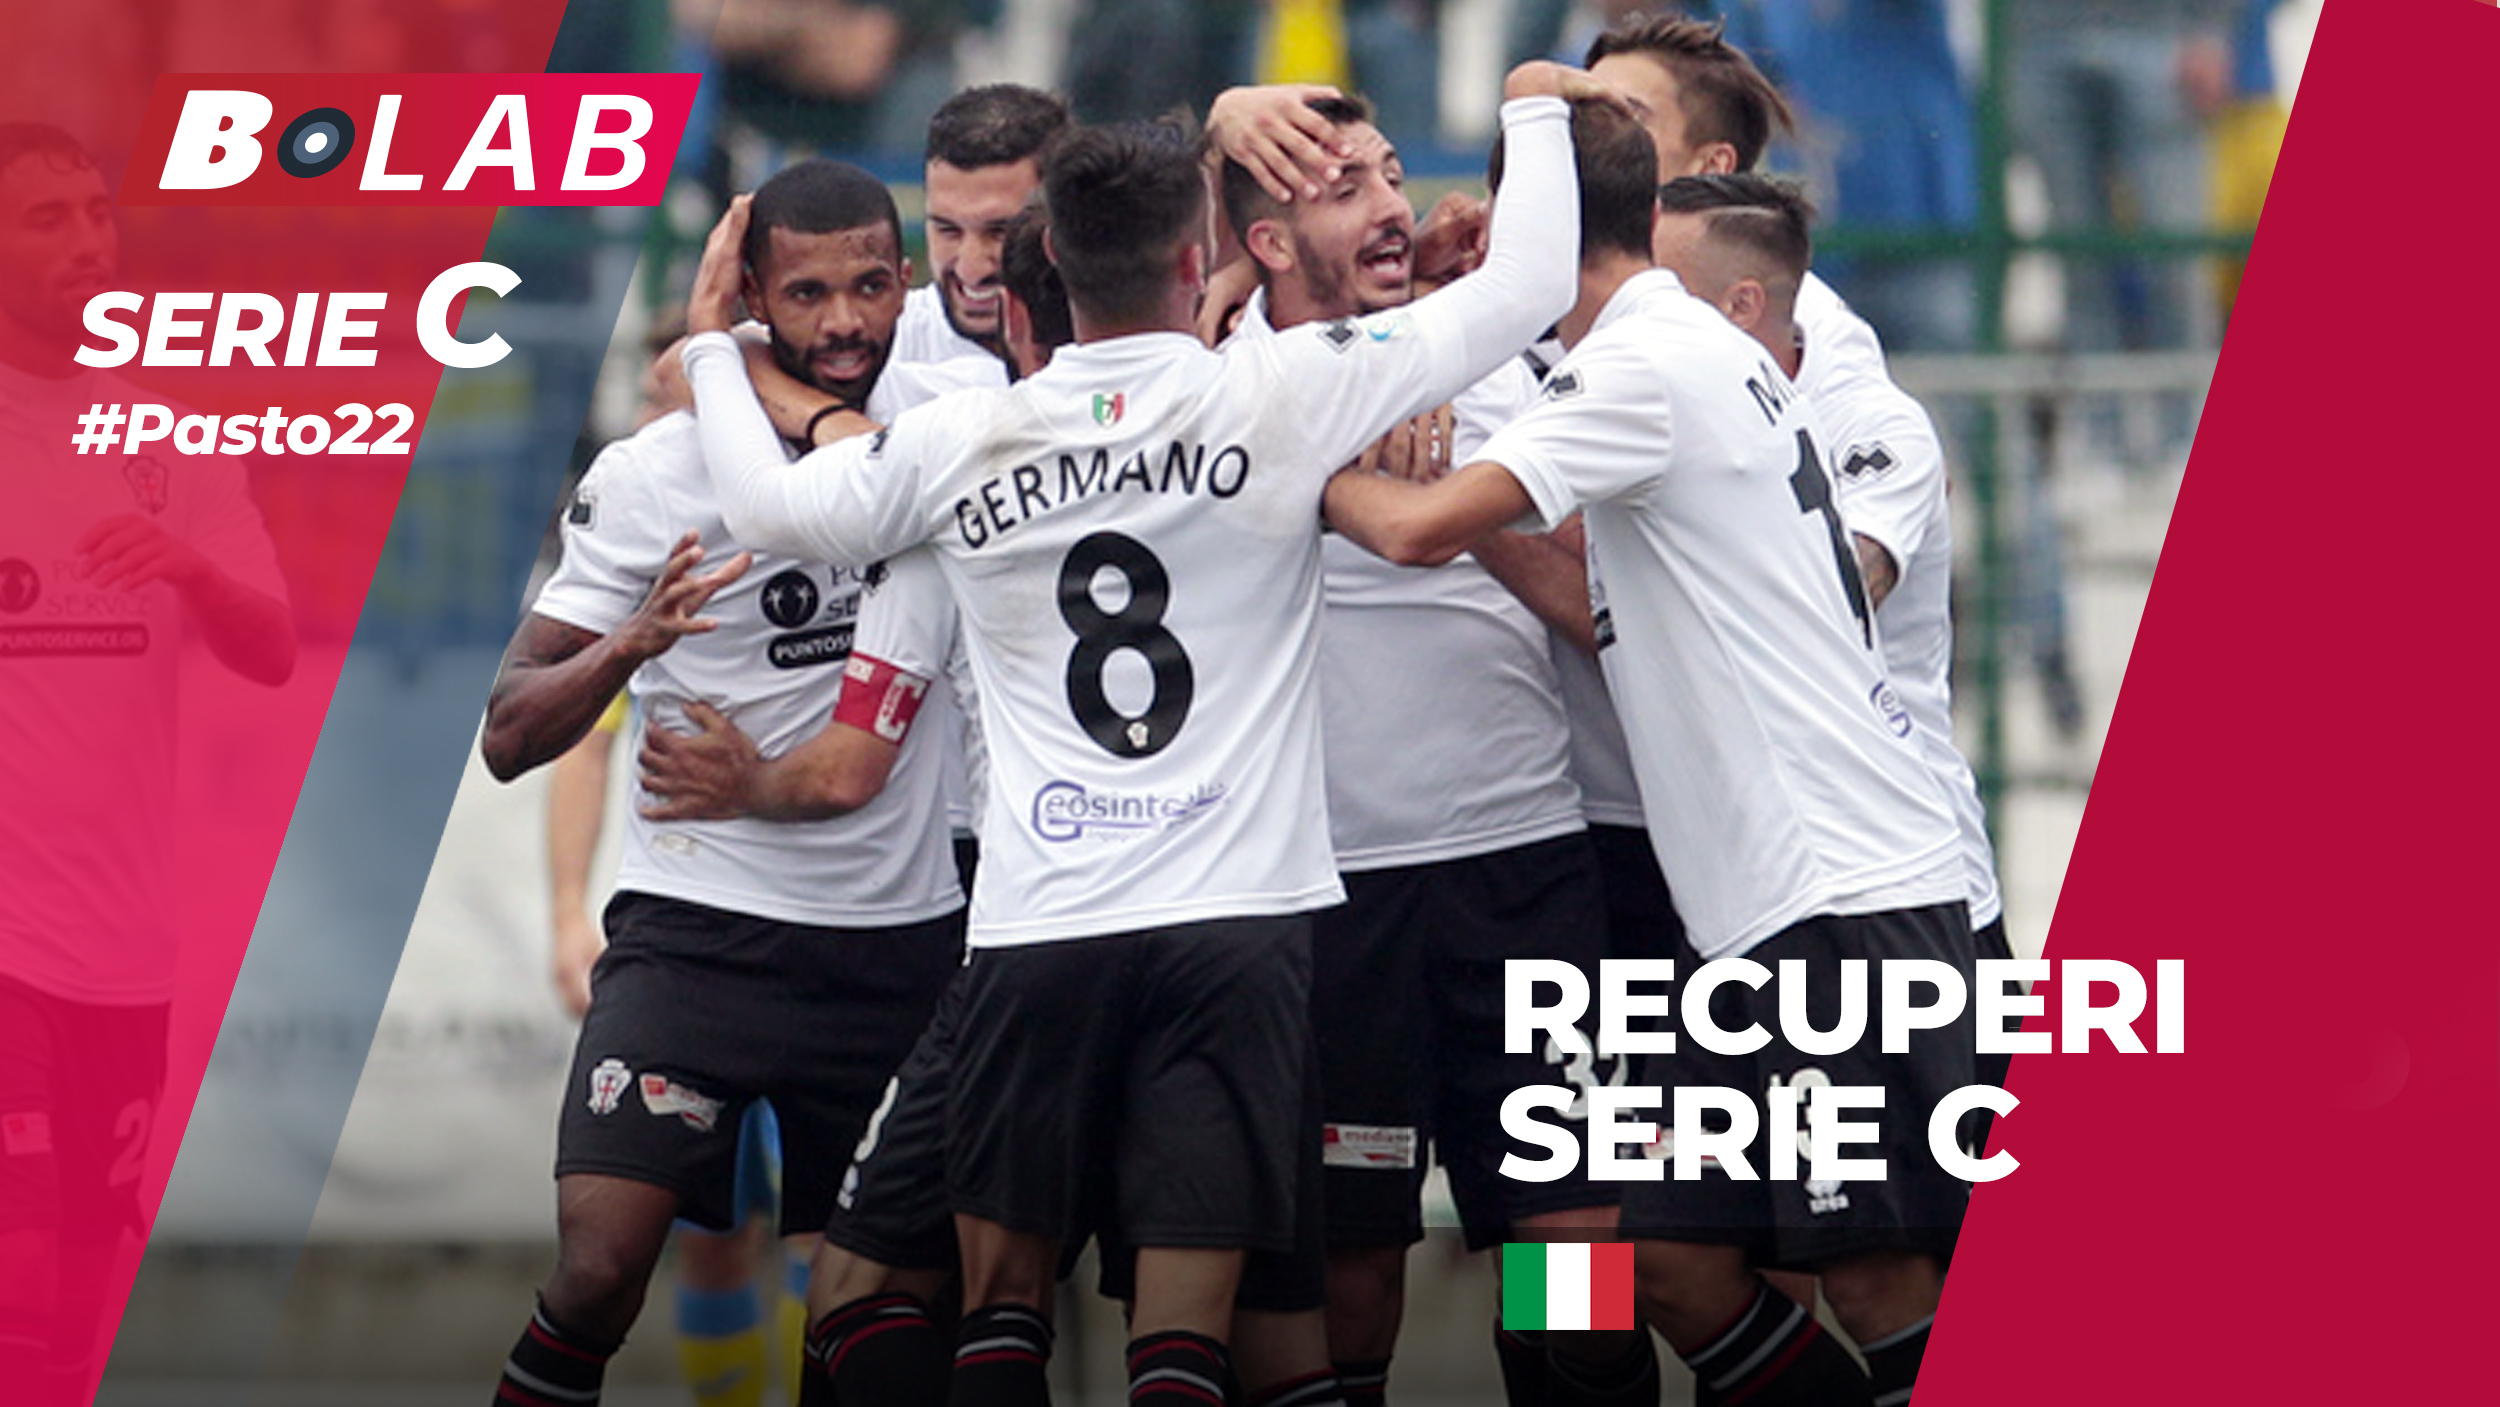 Pronostici Serie C recuperi 20-21 novembre: #Csiamo, il blog di #Pasto22